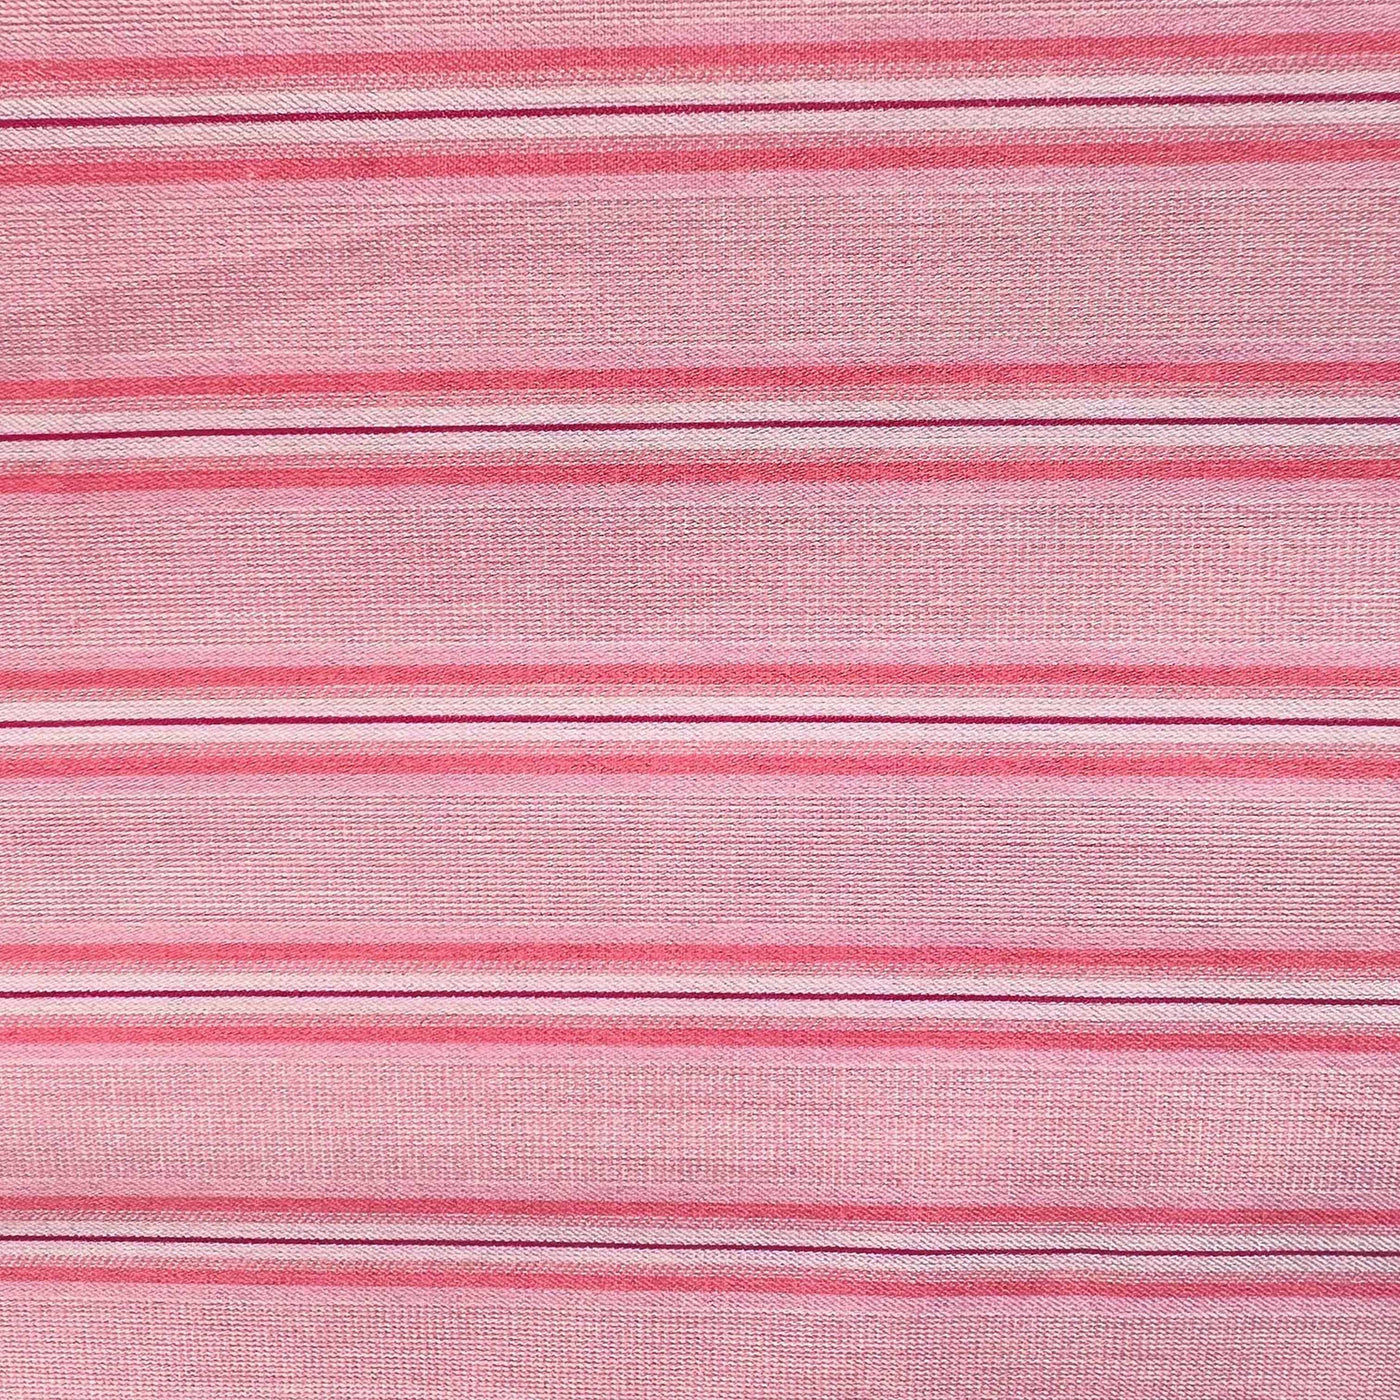 COTTON PERCALE stripe pillow case Pink shirt stripe